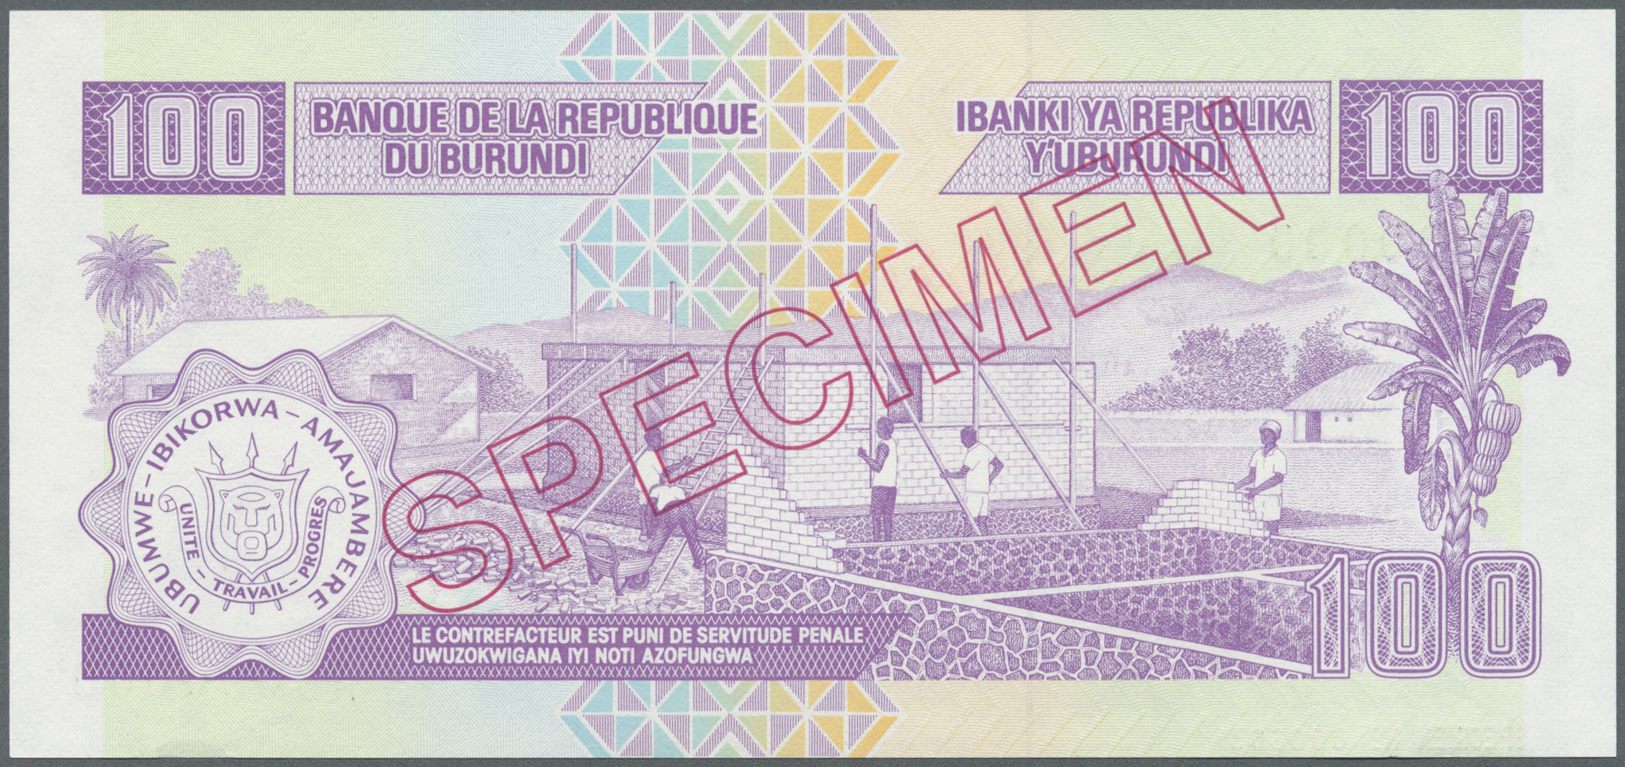 00454 Burundi: 100 Francs 1993 Specimen P. 37cs In Condition: UNC. - Burundi